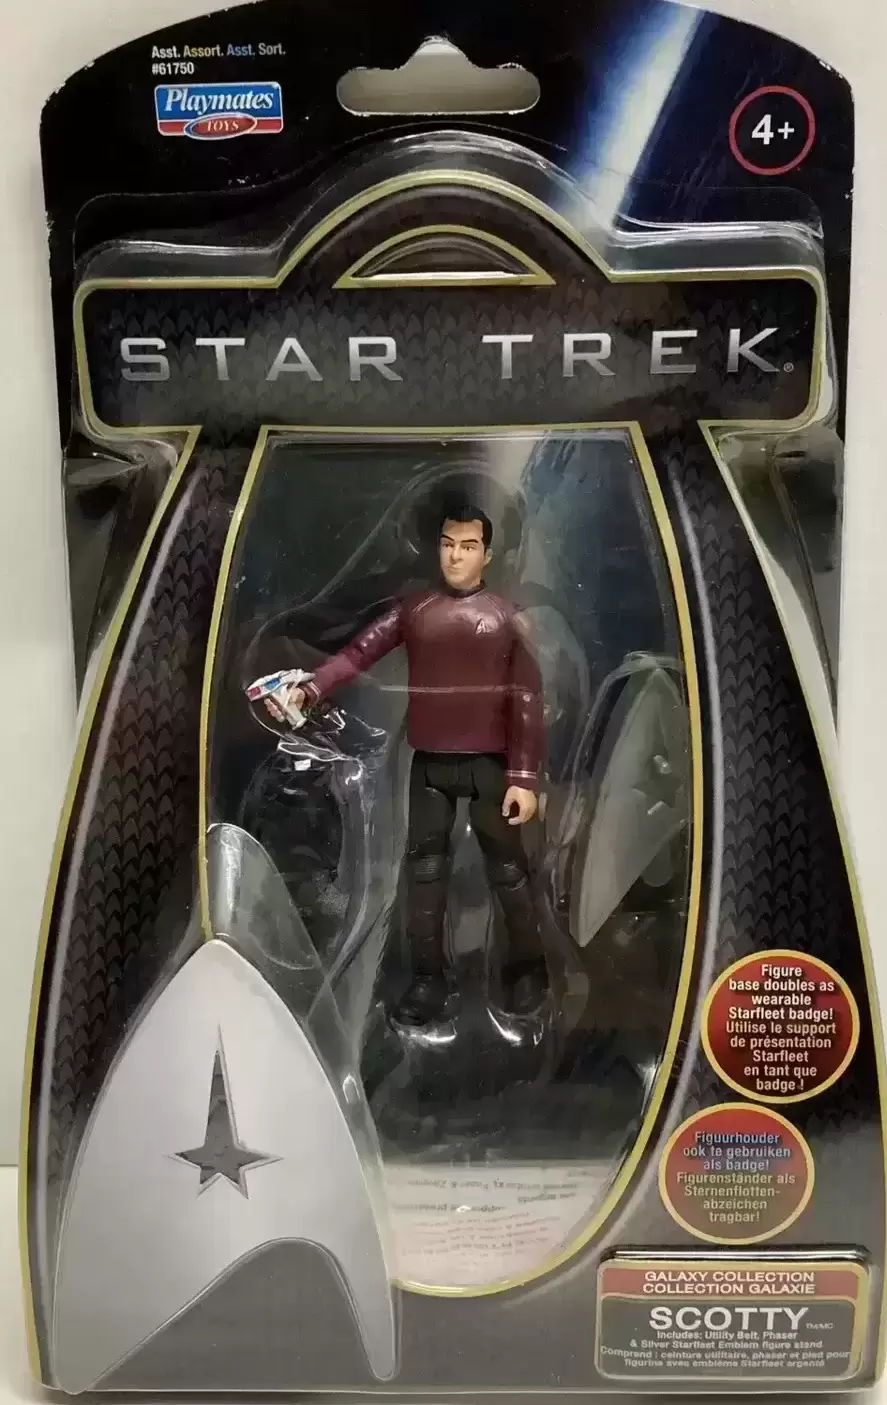 Star Trek - Galaxy Collection - Scotty